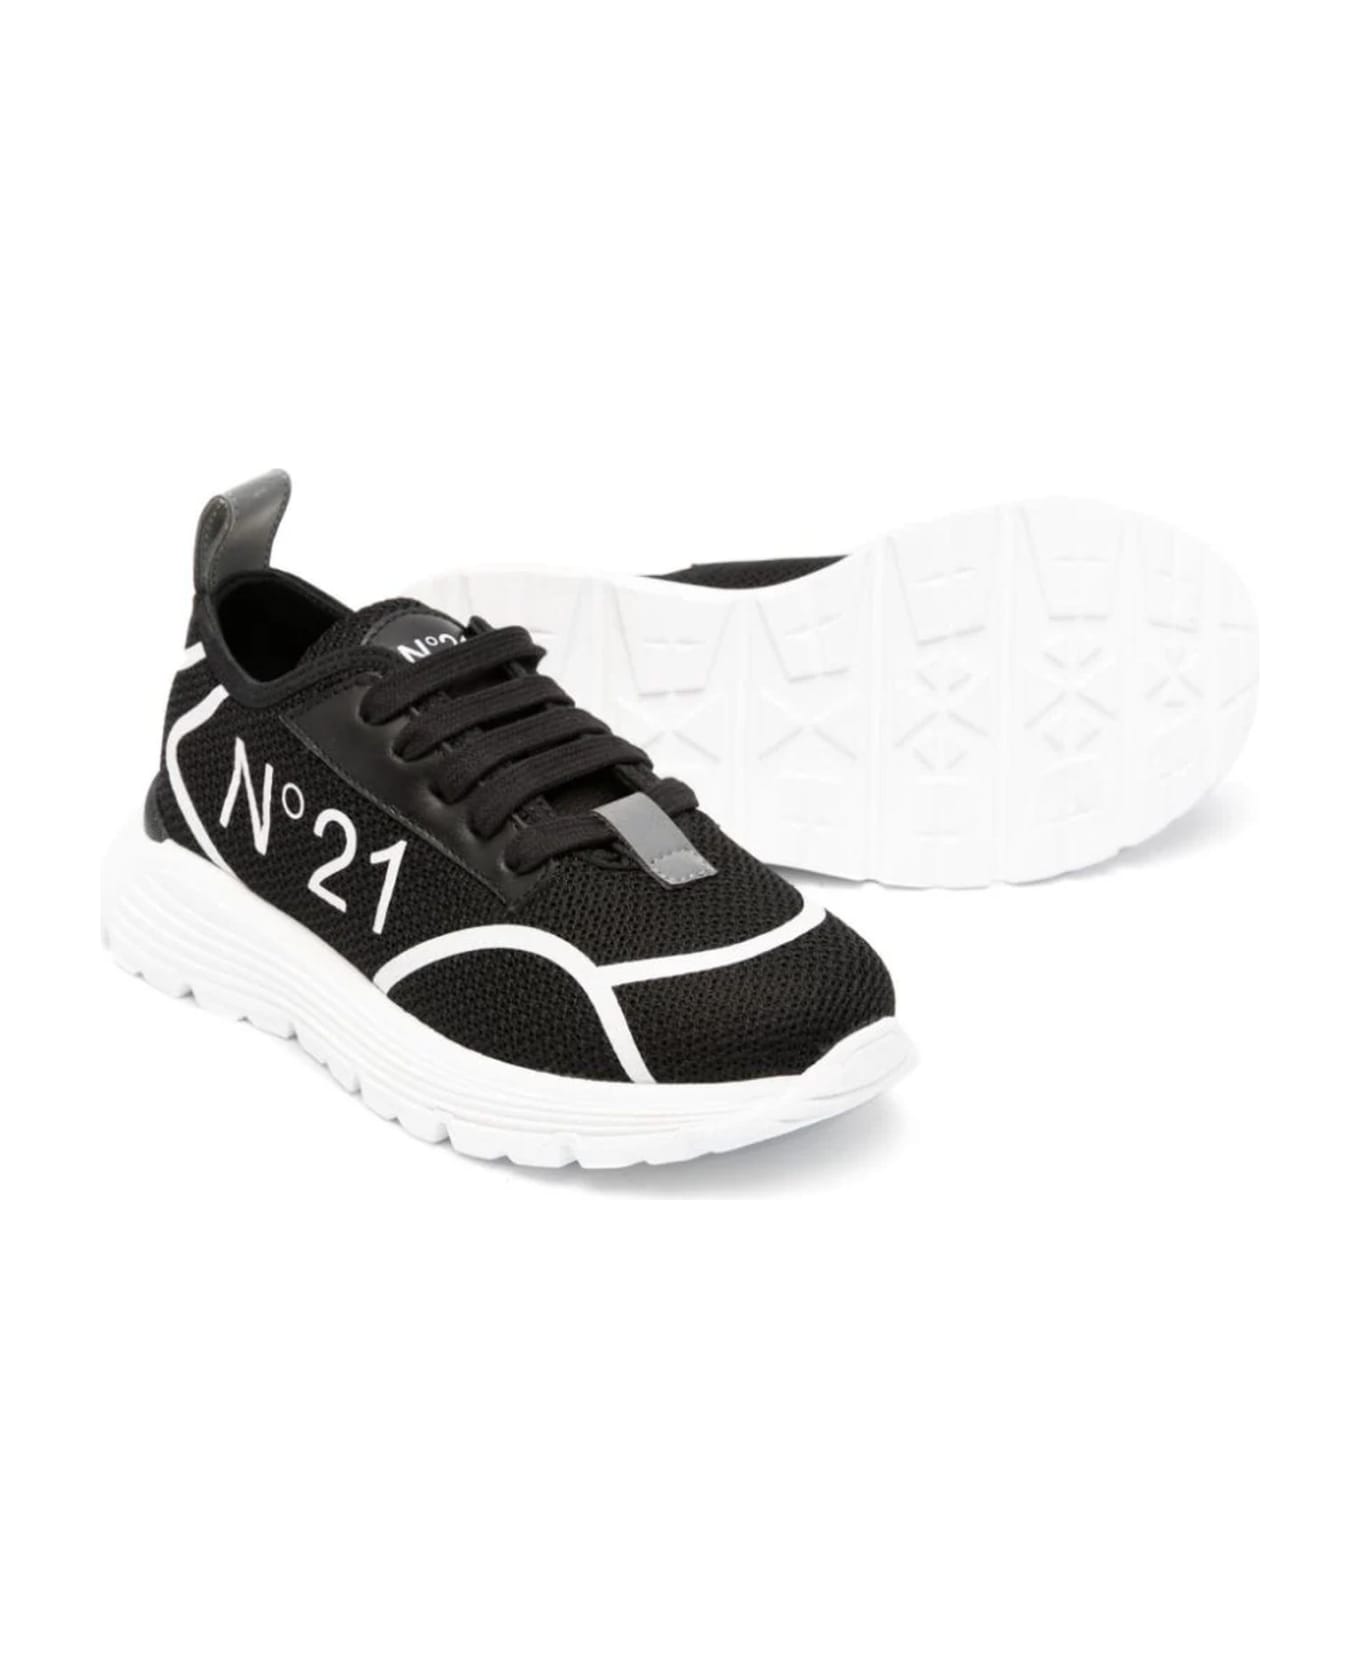 N.21 N°21 Sneakers Black - Black シューズ